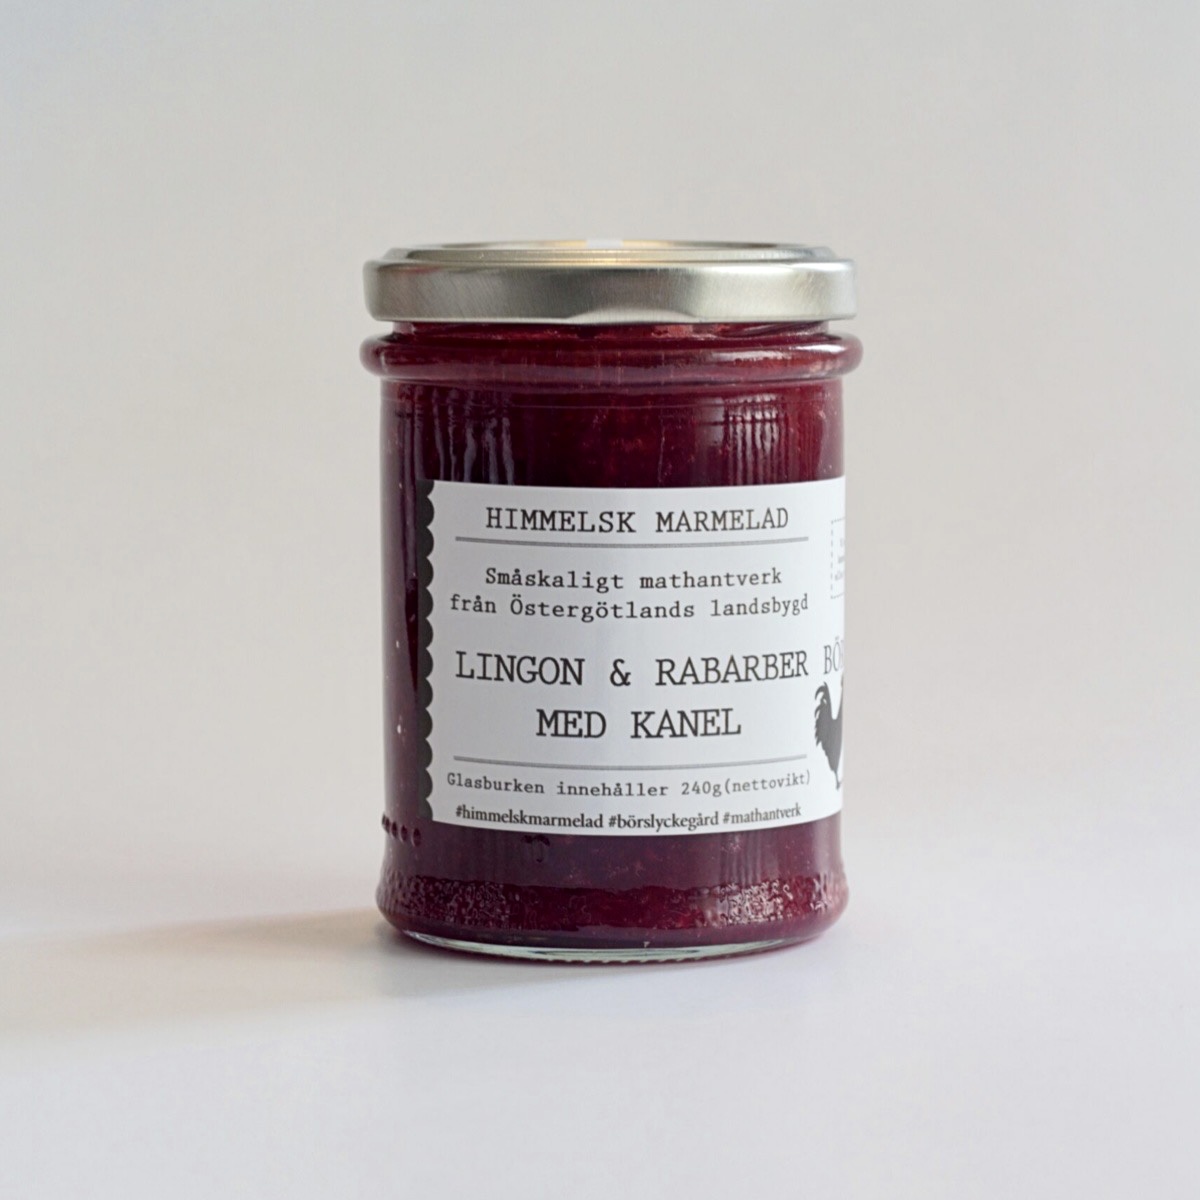 Omslagsbild för “Himmelsk marmelad - Lingon & rabarber med kanel”